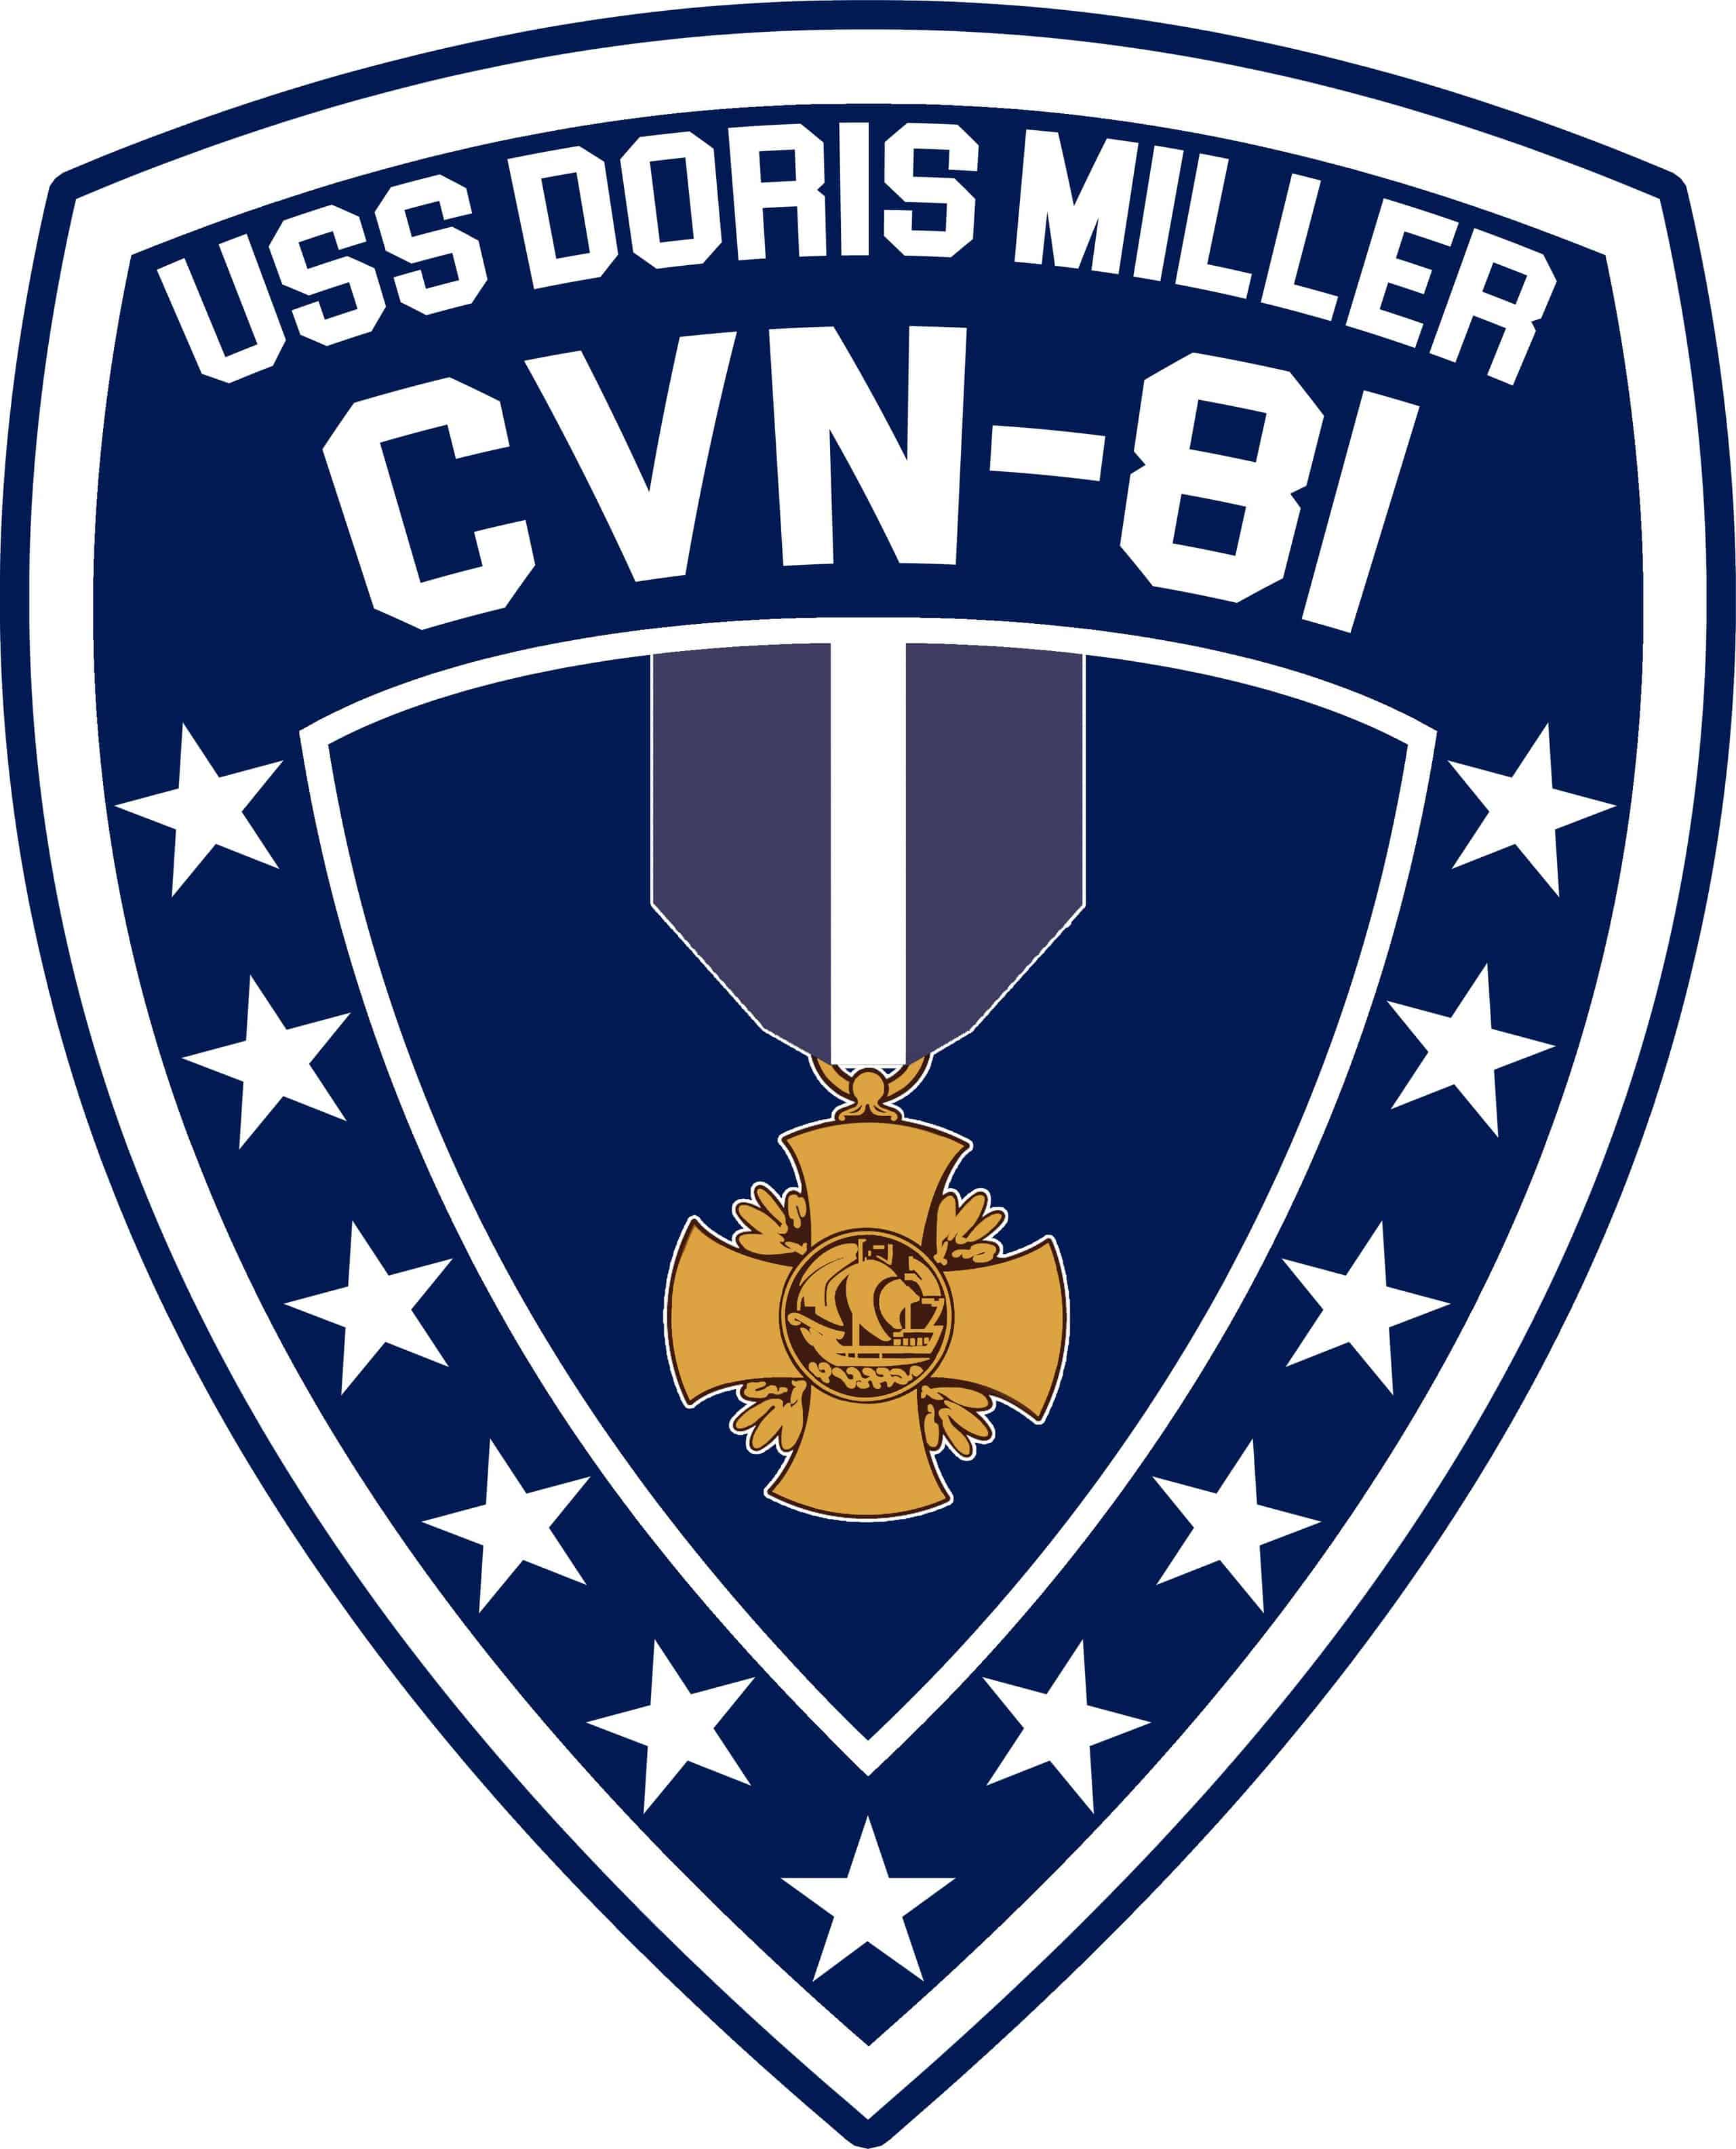 CVN-81 USS DORIS MILLER by TMKNIGHT